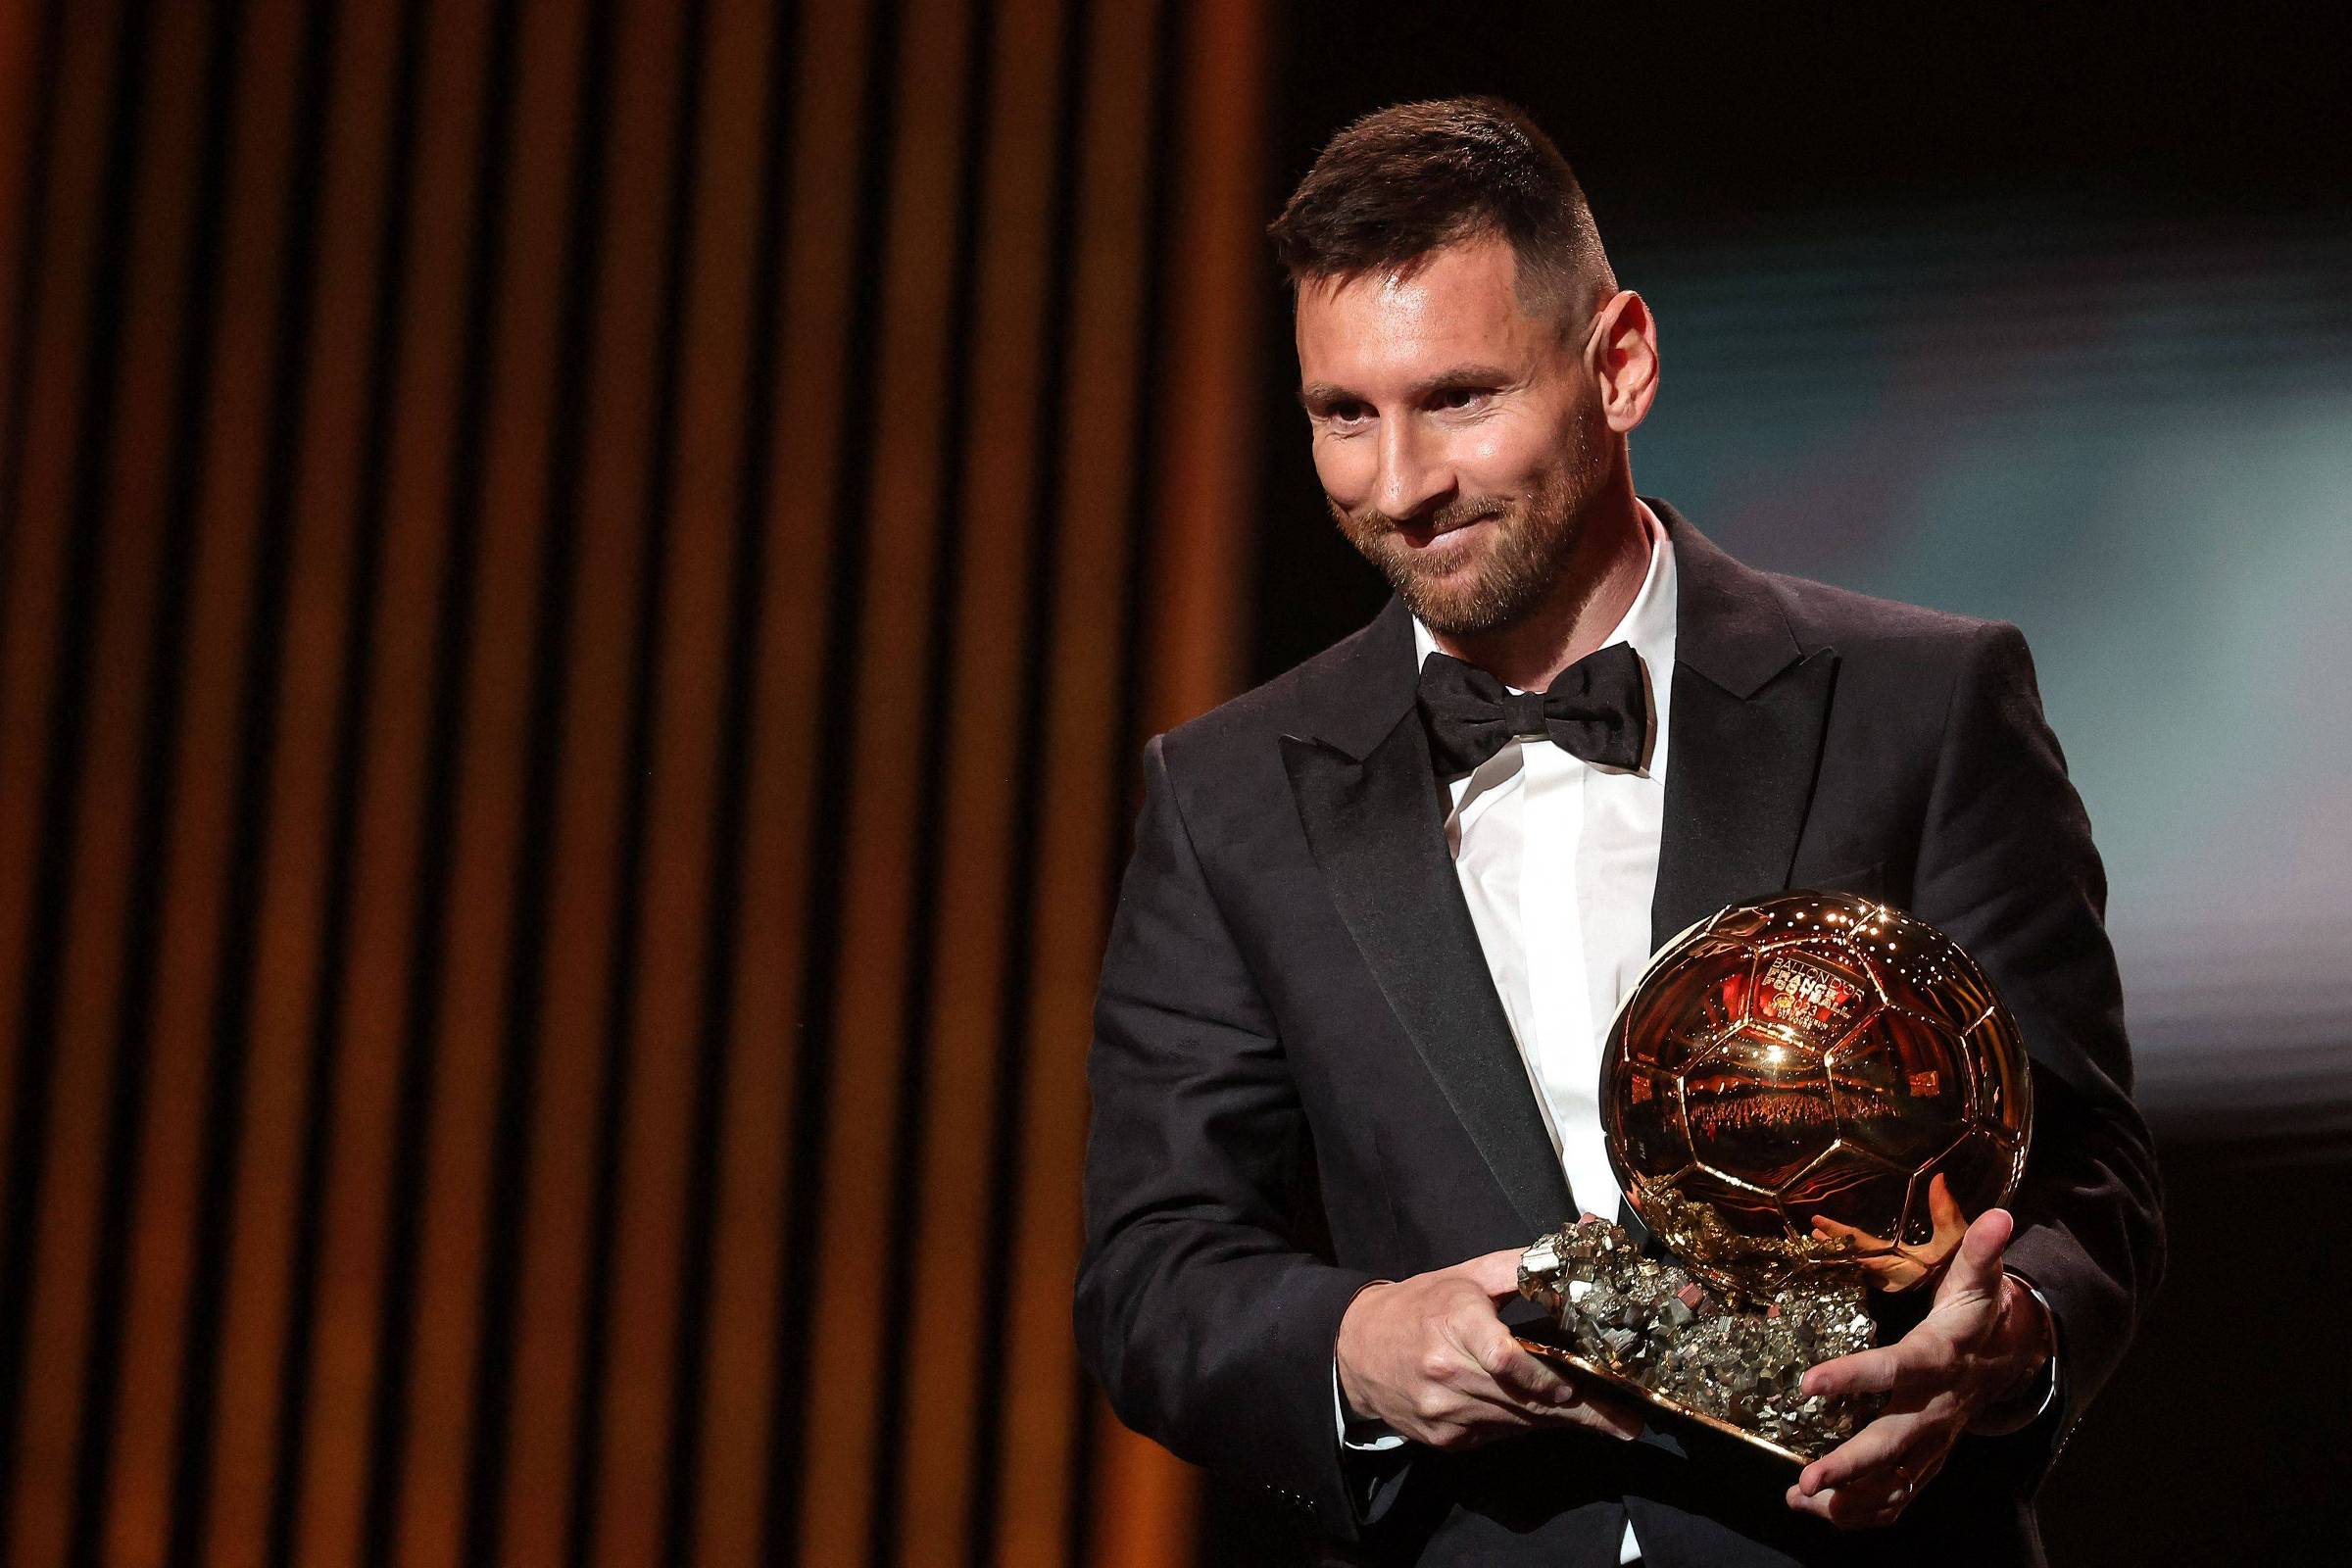 Vale a pena ver de novo: os melhores jogadores do mundo em premiações FIFA.